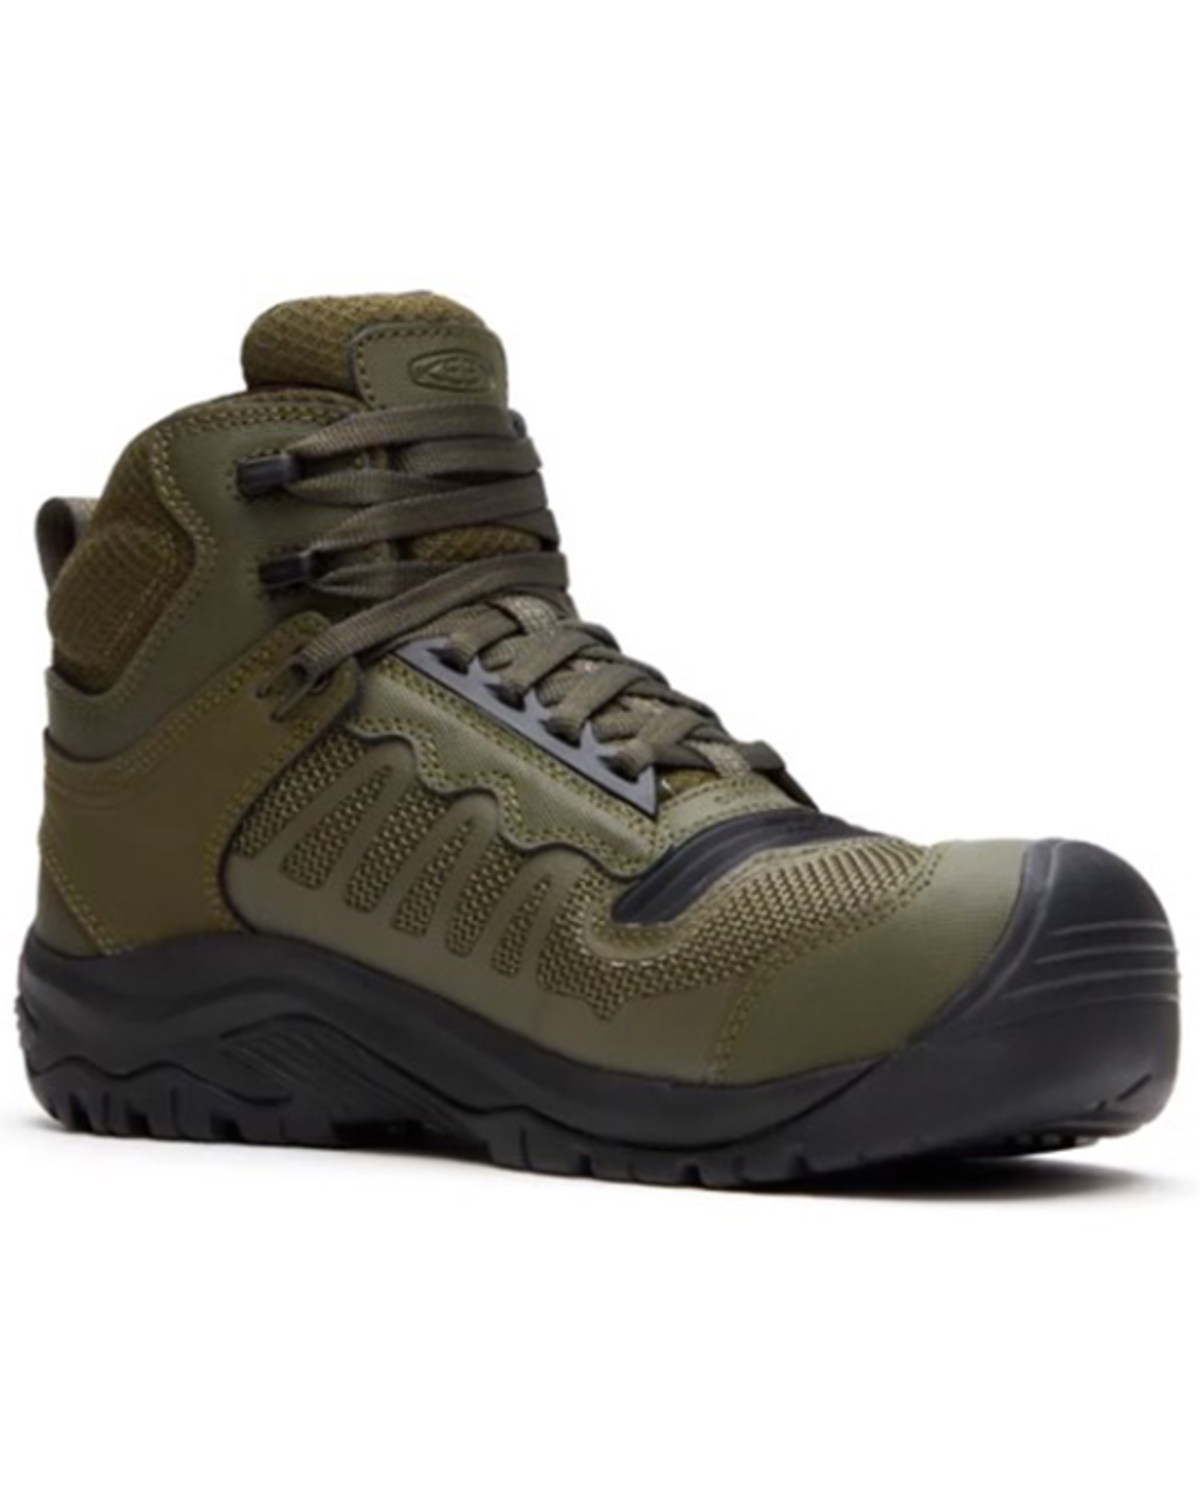 Keen Men's Reno 6" Mid Waterproof Work Boots - Composite Toe